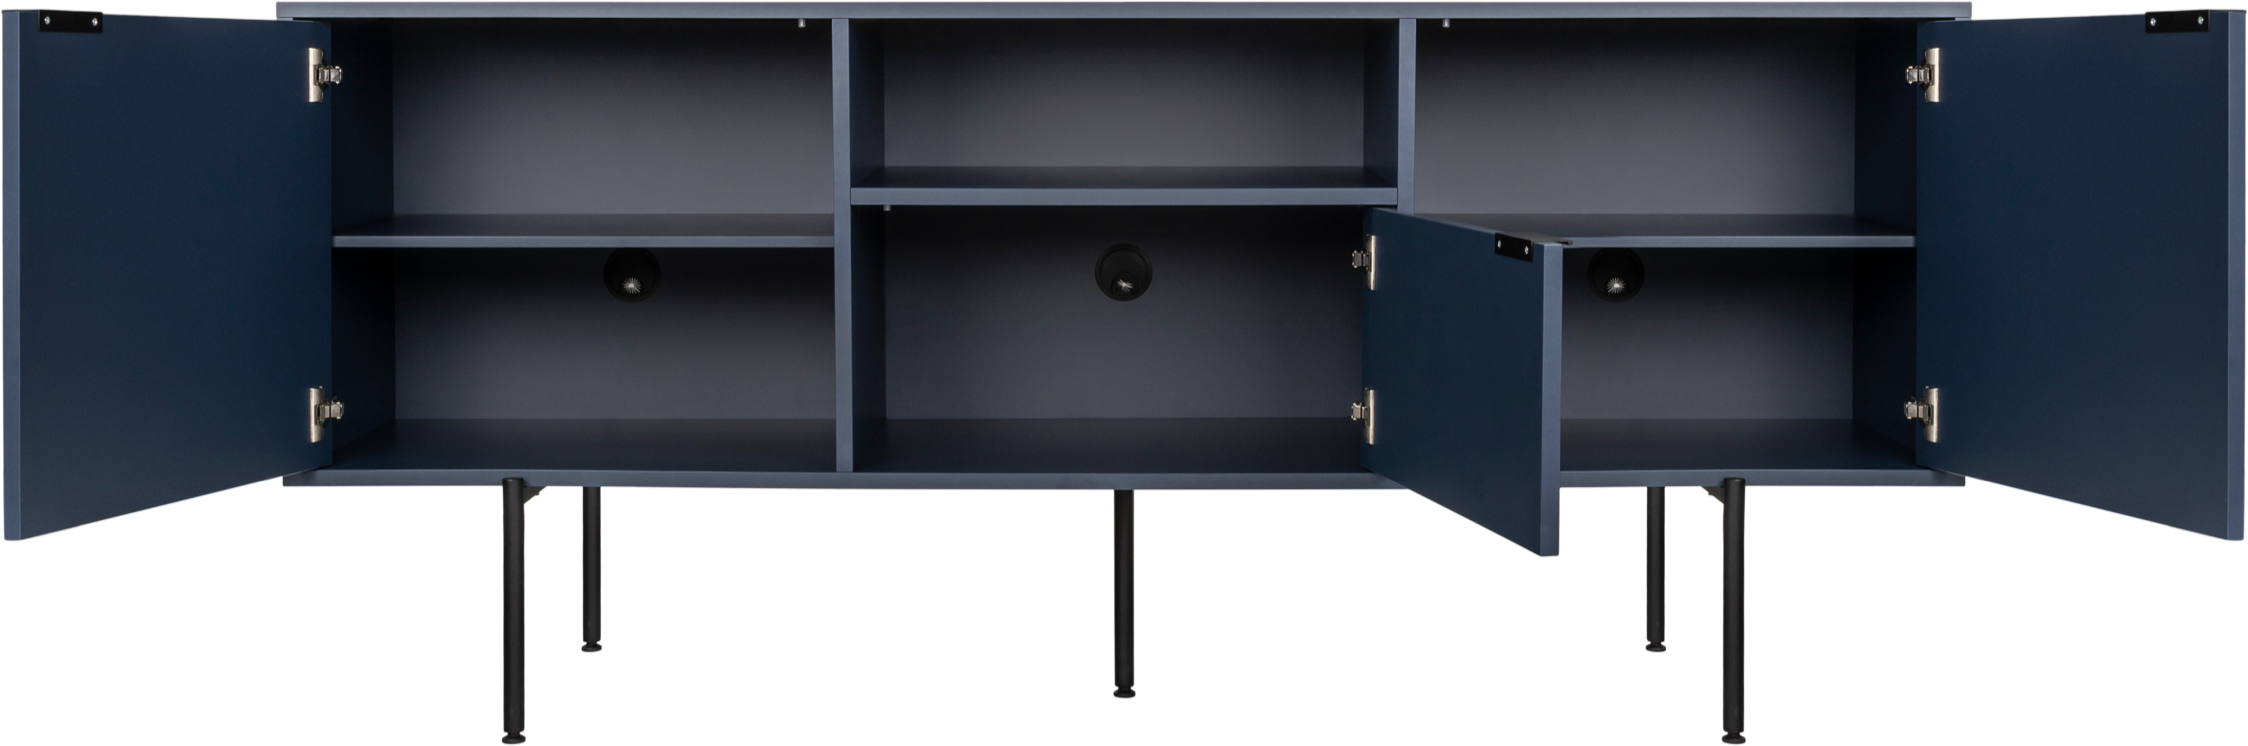 Bau Sideboard in Evening Blue präsentiert im Onlineshop von KAQTU Design AG. Sideboard ist von Noo.ma